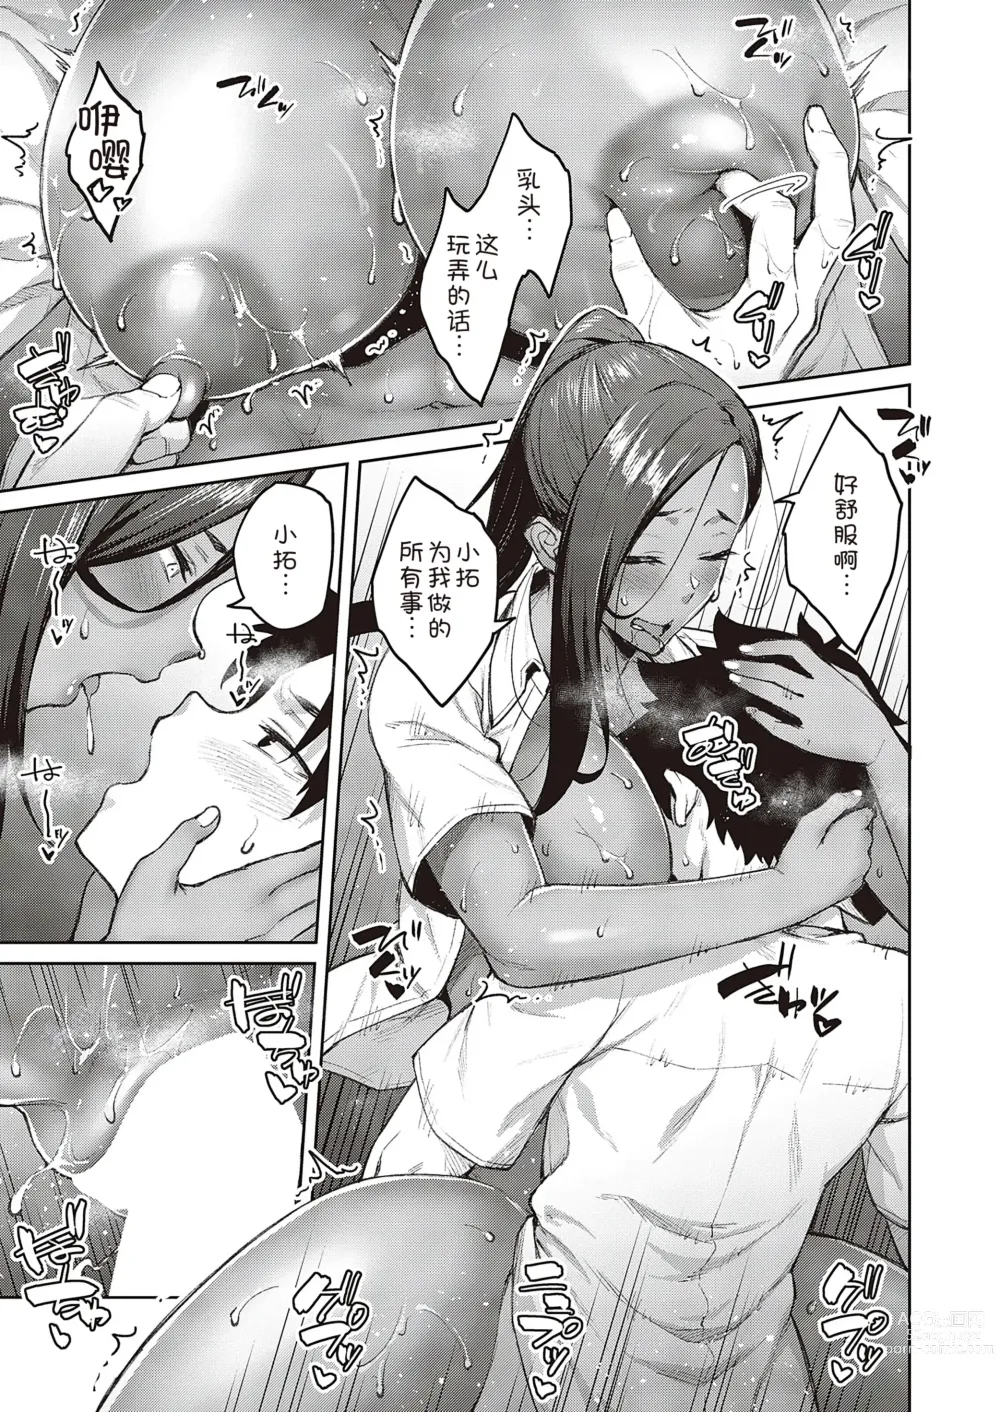 Page 30 of manga Tachiaoi 2